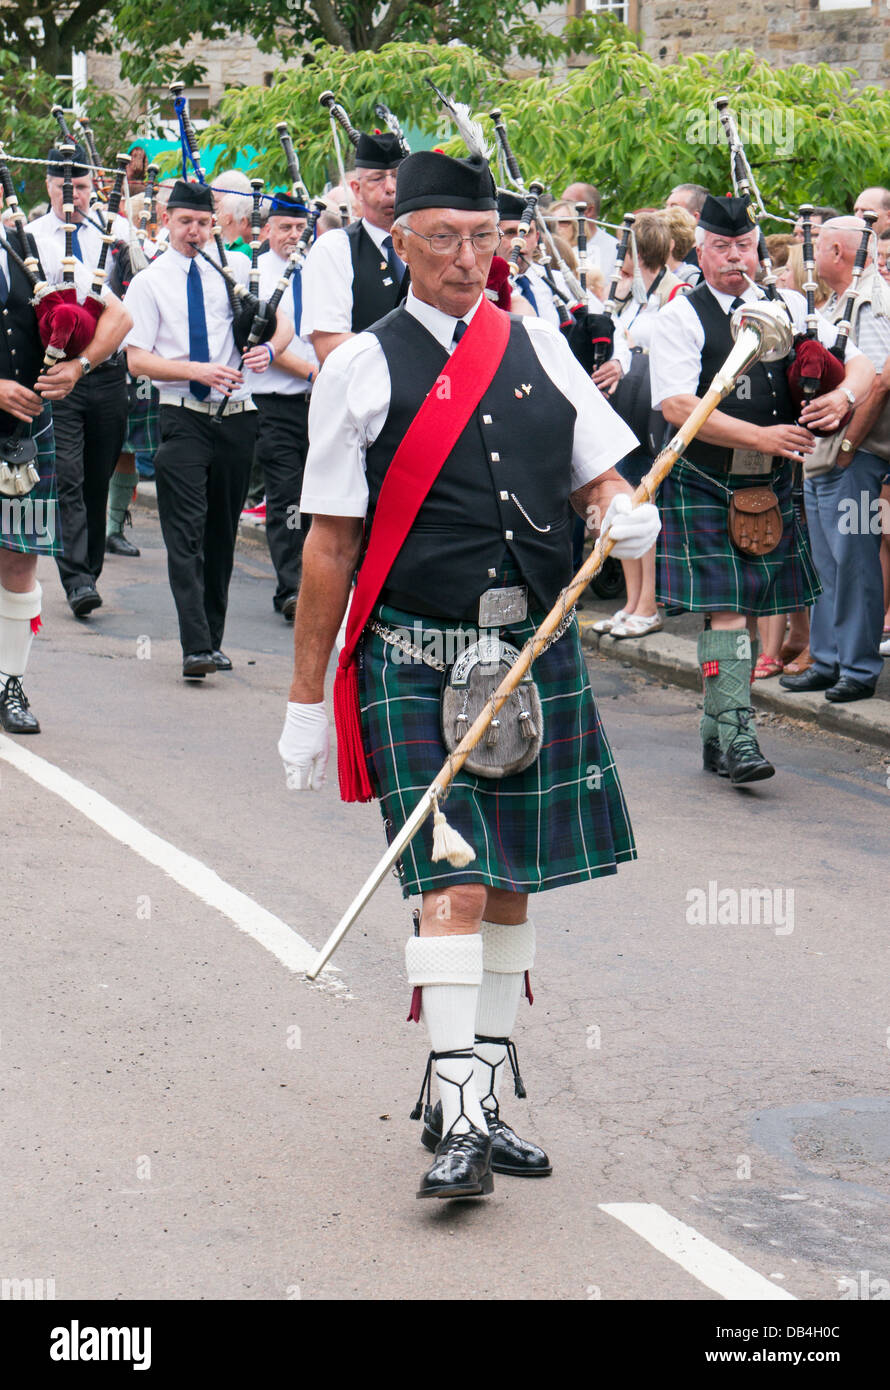 Rothbury Highland Pipe Band marschierten durch die Stadt, traditionelles Musikfestival Rothbury, Nordengland, UK Stockfoto